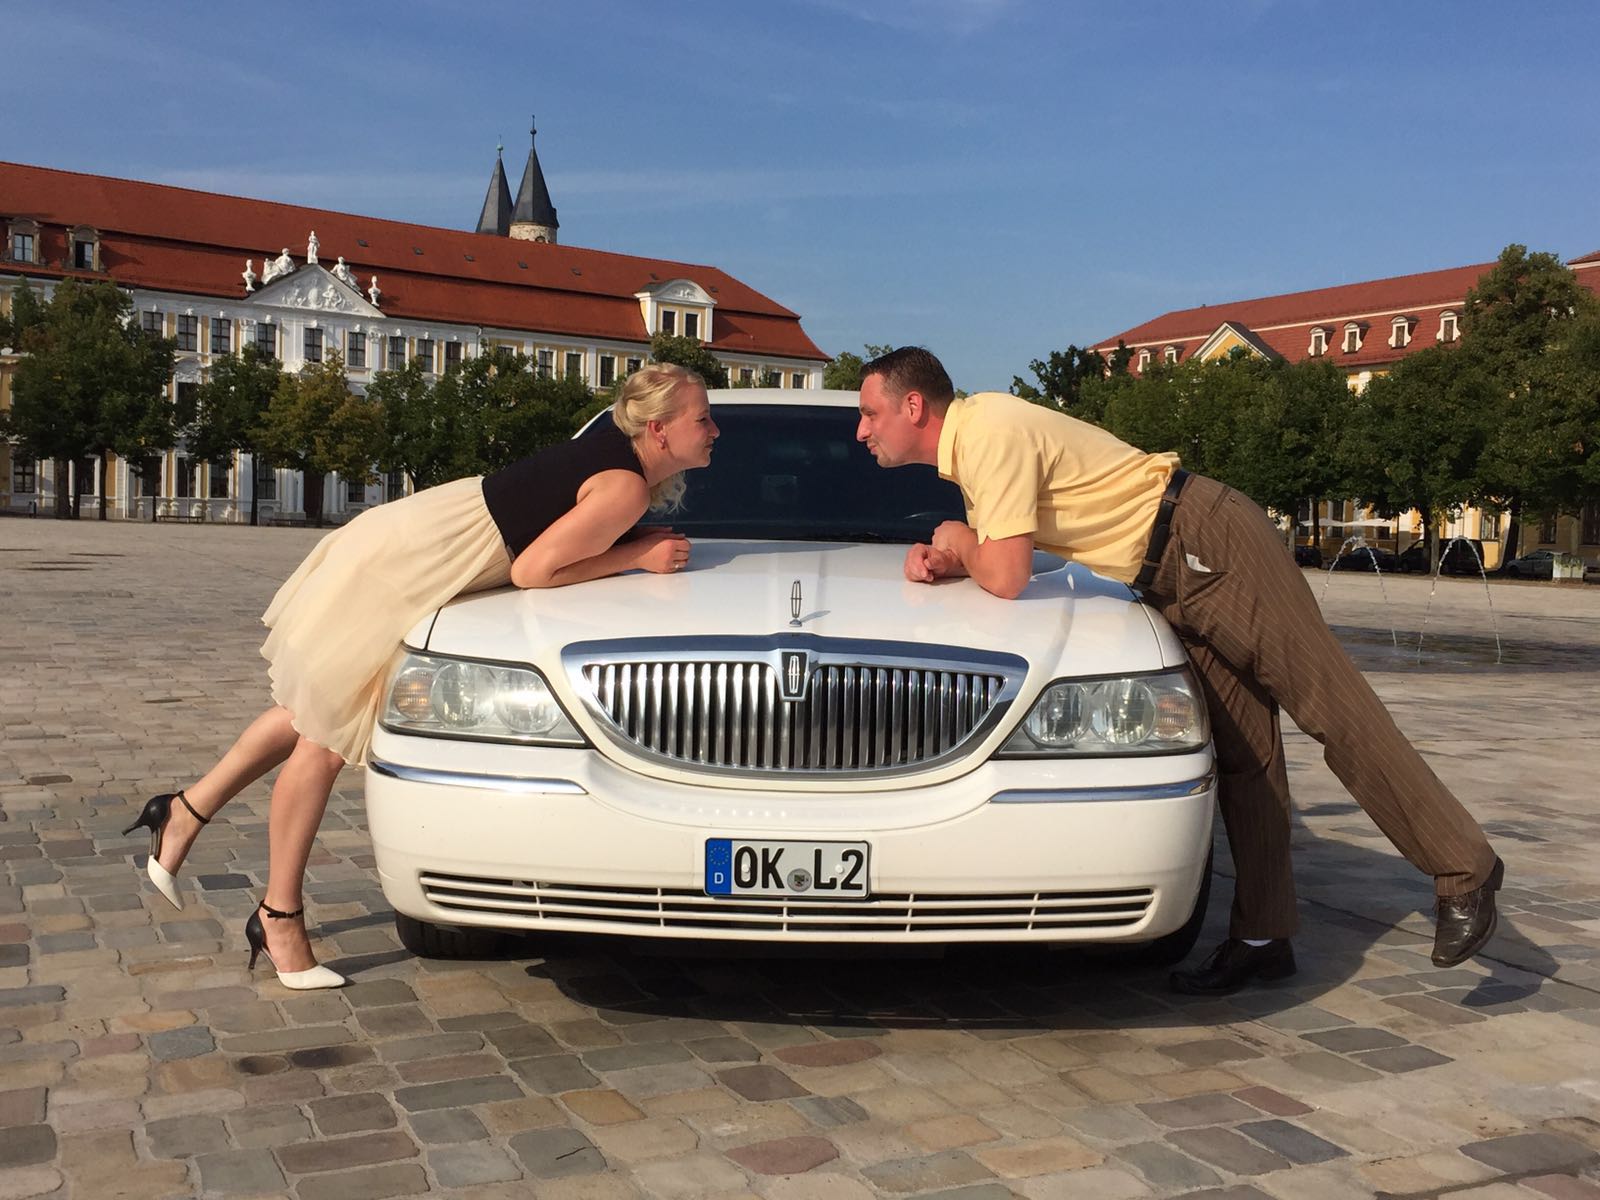 Päärchen posiert vor weisser Miet-Limousine für Stadtrundfahrt in Magdeburg